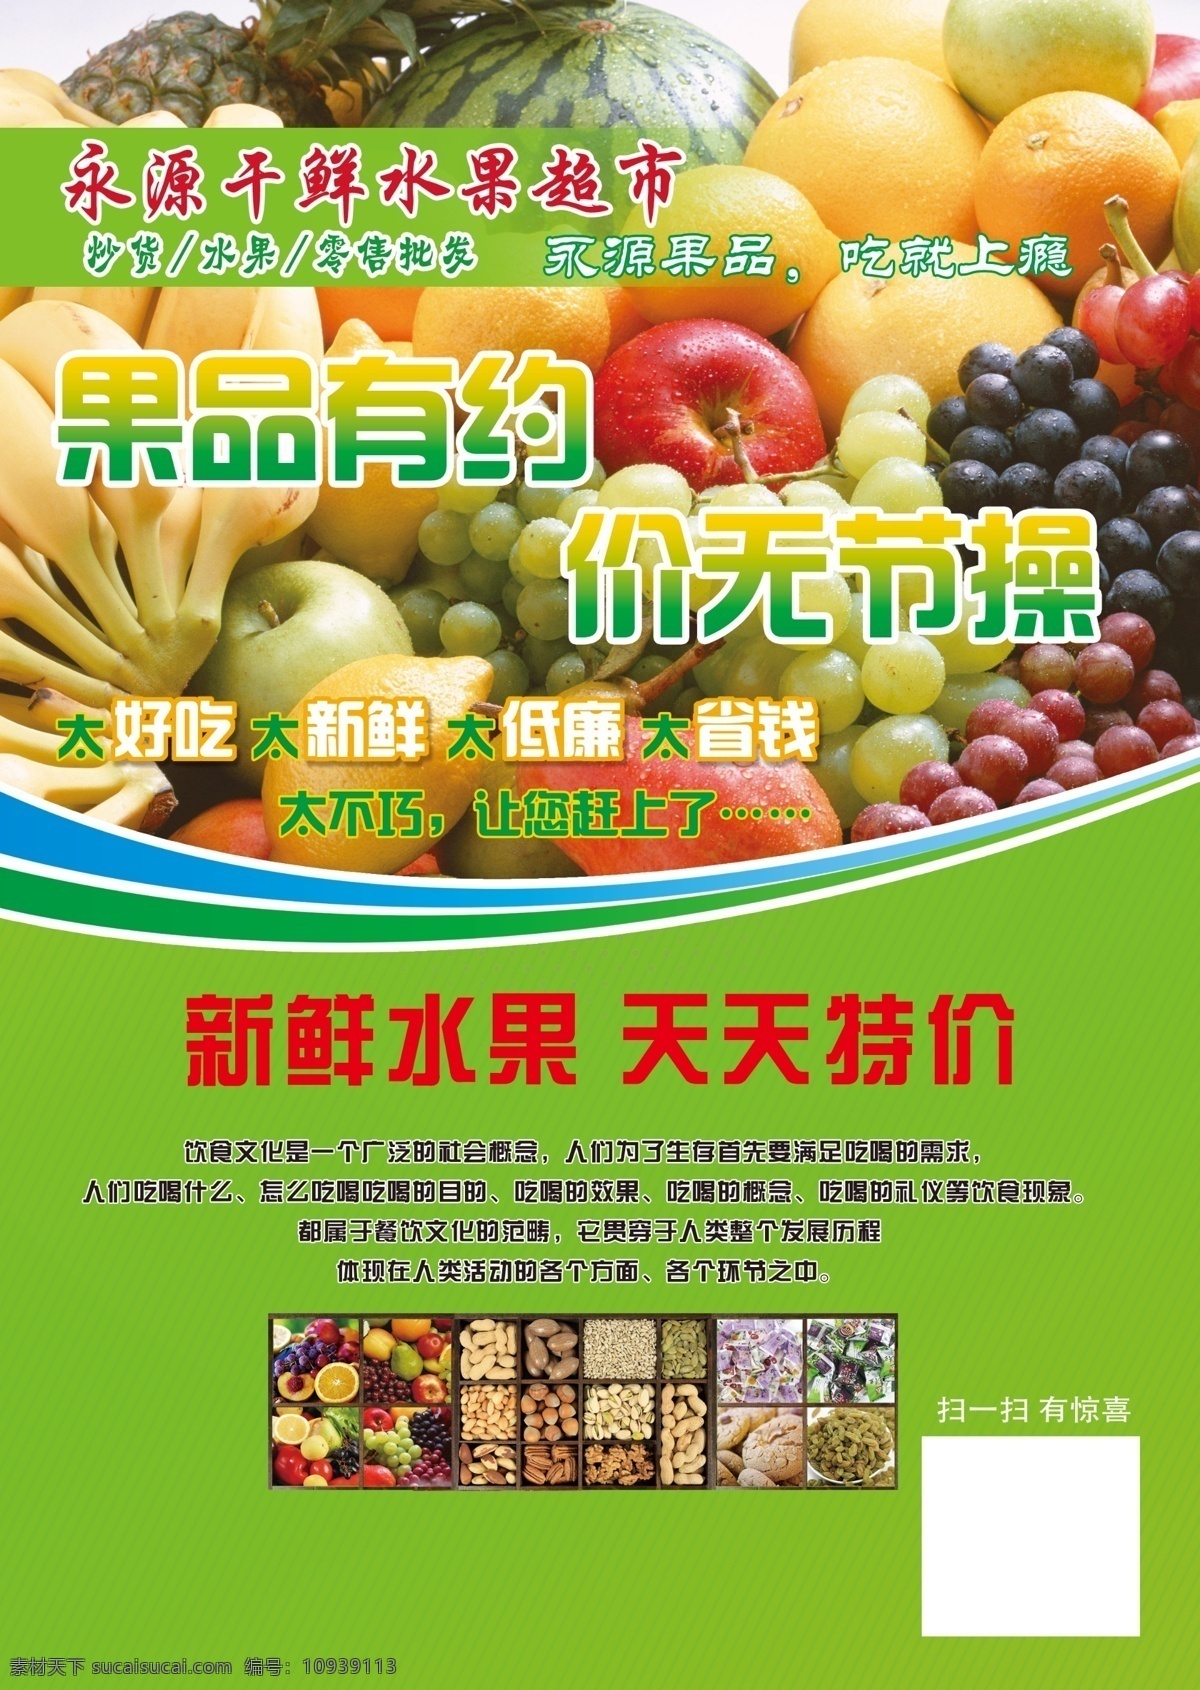 水果传单 超市水果 水果行 水果宣传 水果海报